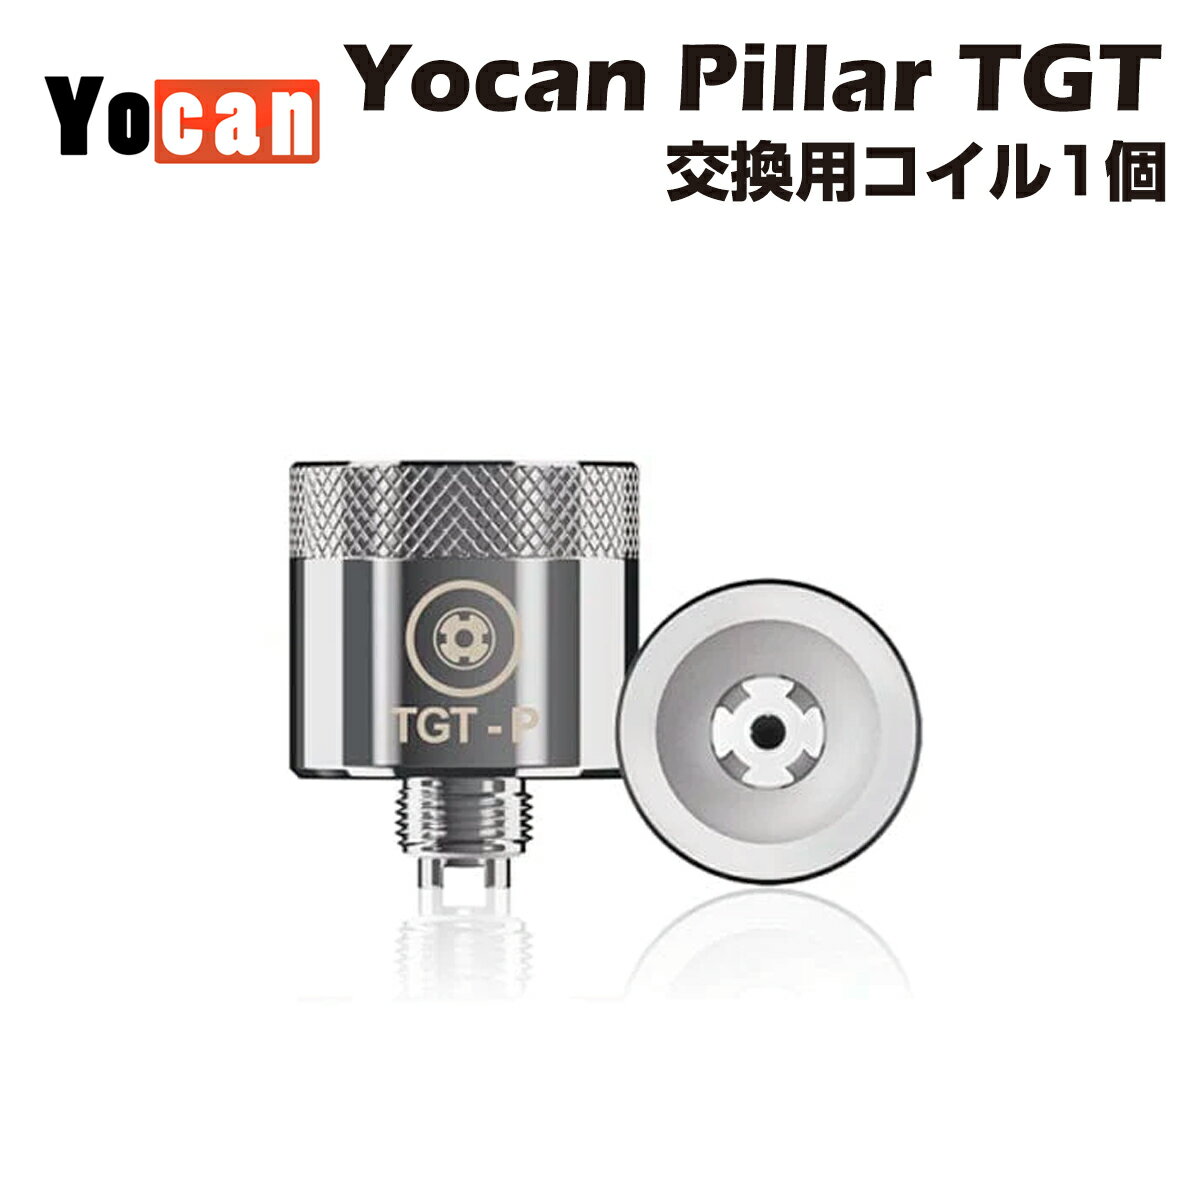 Yocan Pillar TGT 交換用コイル 1個です。 セラミックドーナツとクォーツXTALロッドの組み合わせにより、焦げた味になりにくく優れたフレーバーと大量のミストを提供します。 内容品 Yocan Pillar TGT 交換用コイル×1 CBD商品ラインナップ CBDカートリッジ バッテリーに接続するだけで使えるカートリッジタイプ。◆CBDカートリッジ一覧へ CBDワックス ワックス用デバイスでご使用下さい。◆CBDワックス一覧へ CBDパウダー CBD,CBG,CBN等のパウダー。リキッドやオイルへの添加に。◆CBDパウダー一覧へ CBD Vapeリキッド 電子タバコ用デバイスで使えるリキッド製品。◆CBDリキッド一覧へ CBD対応デバイス 510カートリッジ/ワックスに対応したデバイス類を多数取りそろえております。◆ヴェポライザーワックス用一覧へ ドライハーブヴェポライザー 燃焼時のタールが発生しない便利なデバイスです。◆ドライハーブヴェポライザー一覧へ 関連キーワード 電子タバコ 電子たばこ hemp cannabis カンナビス シービーエヌ サプリメント サプリ リフレッシュ refresh リラックス relax オーガニック ナチュラル ヴェポライザー ベポライザー ペン グミ ワックス ハーブ オイル エディブル 吸引 クッシュ クッキー 粉 安い スターターキット セット ぐみ ジョイント 使い捨て 人気 無農薬 自然由来 自然成分 天然成分 天然由来 植物性 CBDペン 大麻 麻 吸引 ブロードスペクトラム フルスペクトラム 一服 安眠 睡眠 眠り 原料 ベイプ ディストレート bape liquid cartridge carts usa gummies for sleep cbda cbga cbc cbt airistech airis